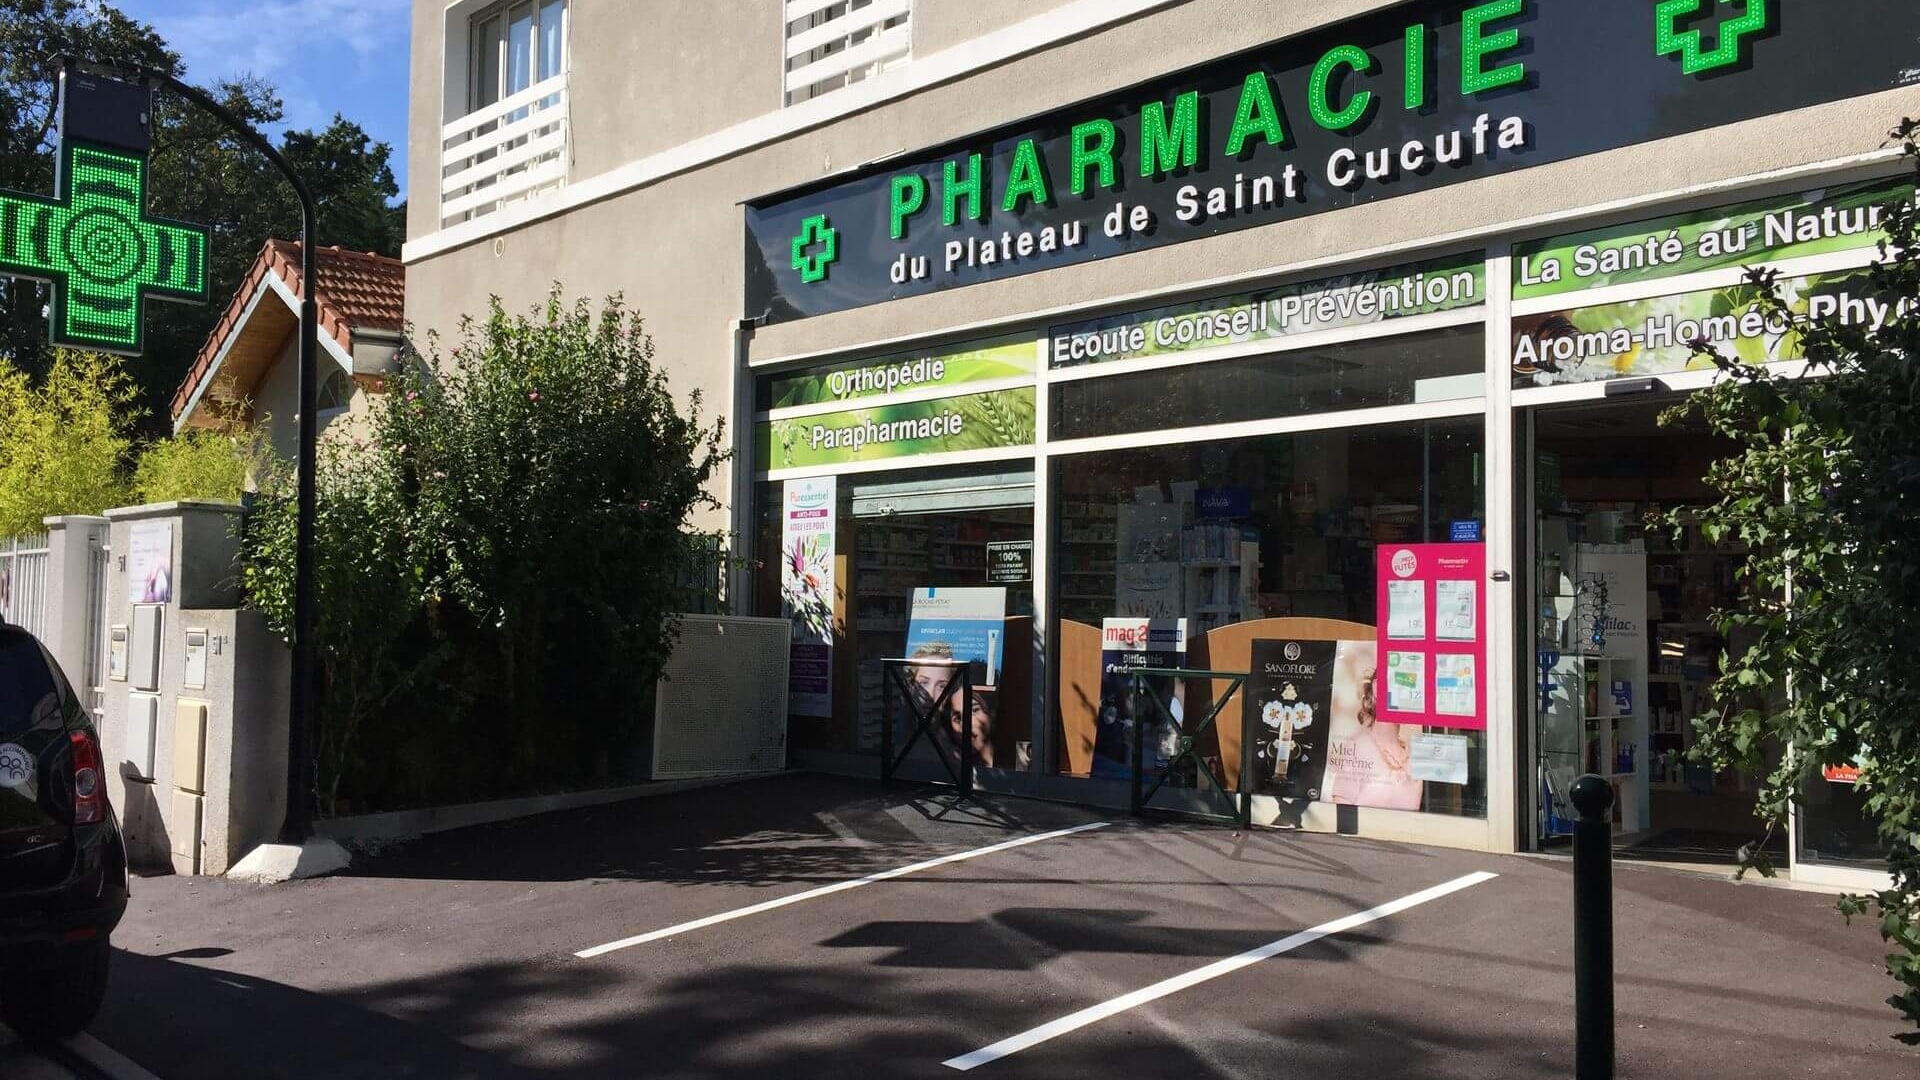 Magasin Pharmacie du Plateau de Saint-Cucufa - Vaucresson (92420) Visuel 1